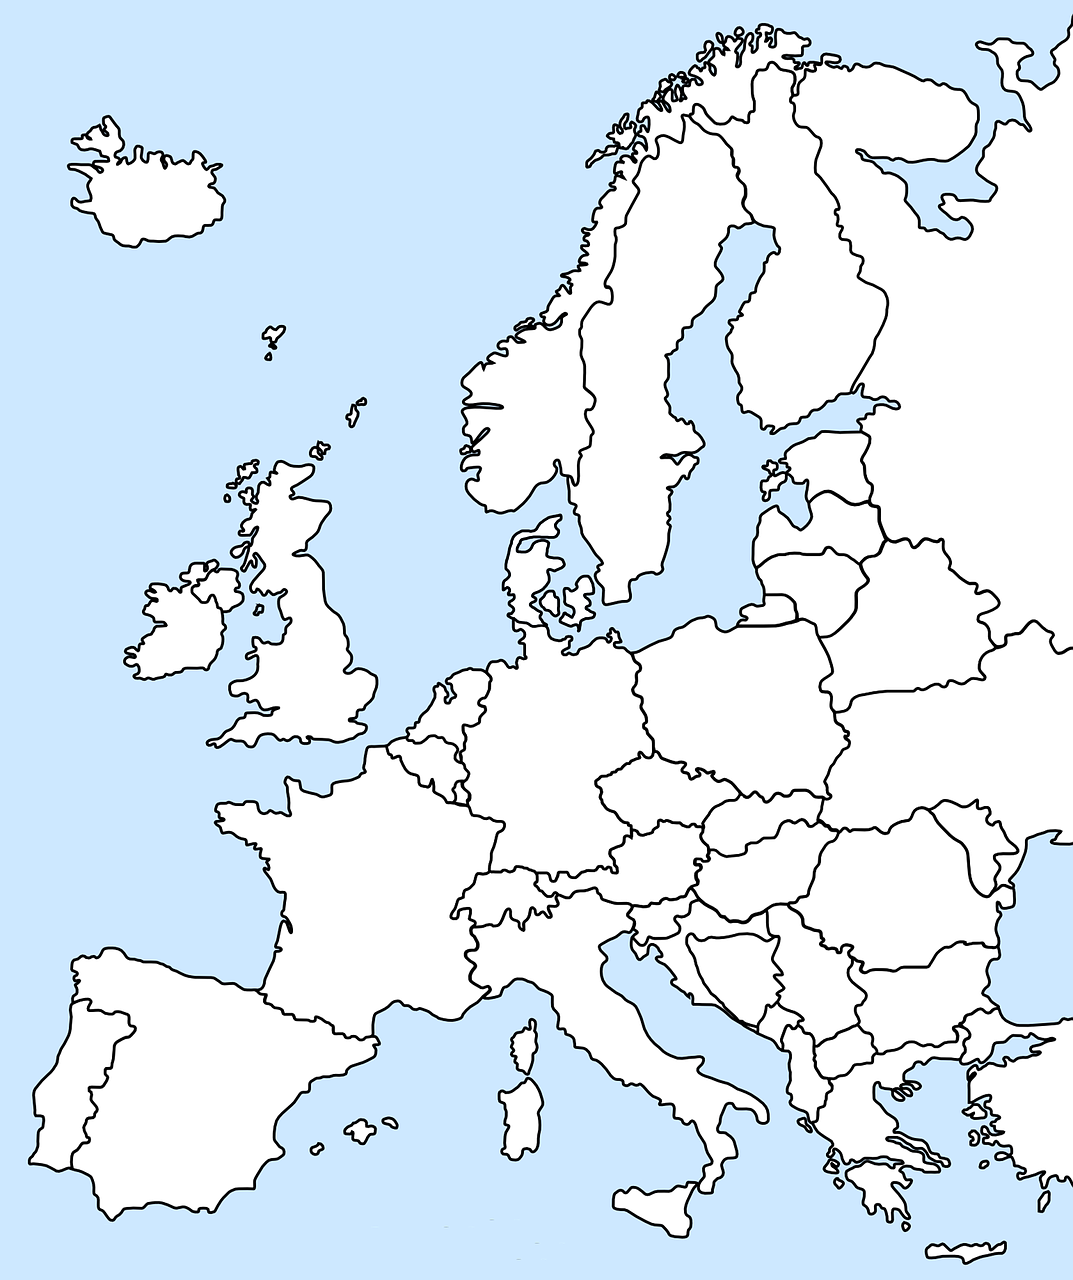 europa map geography europa europa 587511